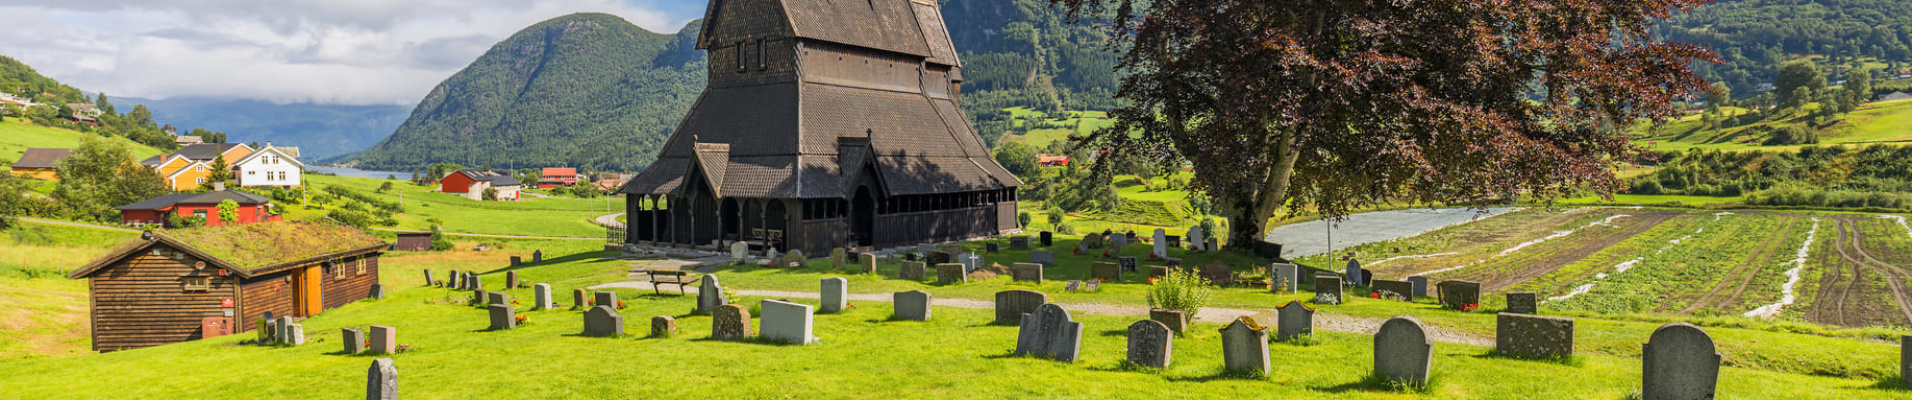 Eglise en bois debout Hopperstad stavkirke